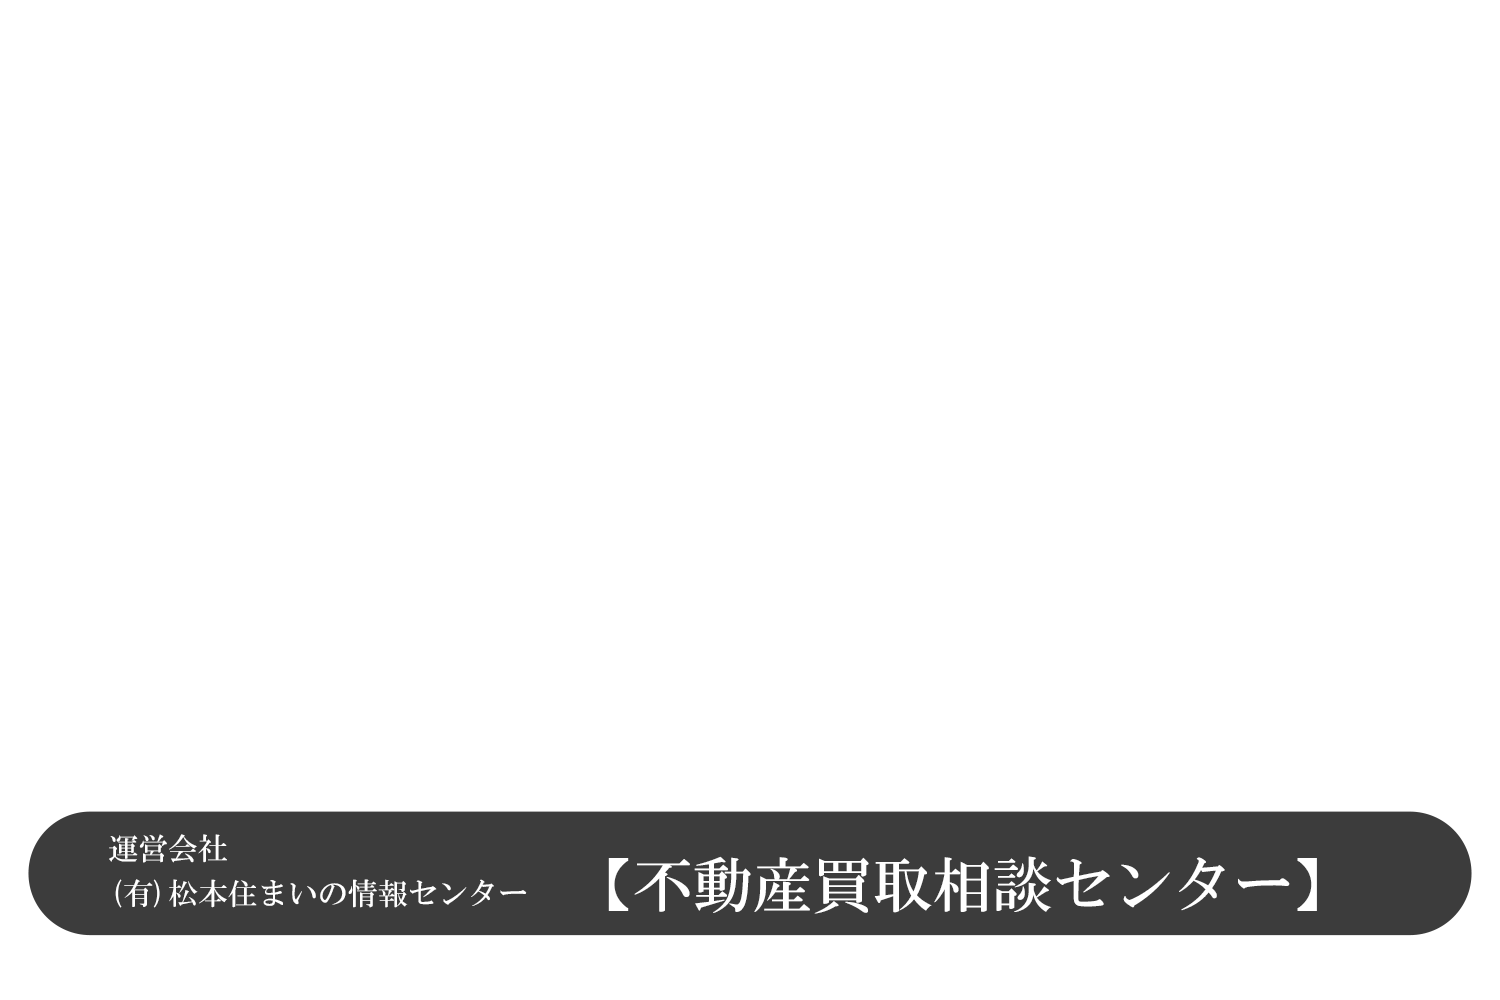 松本市不動産(空き家情報 土地 中古マンション)査定、買取りは手数料なしの不動産買取センターで